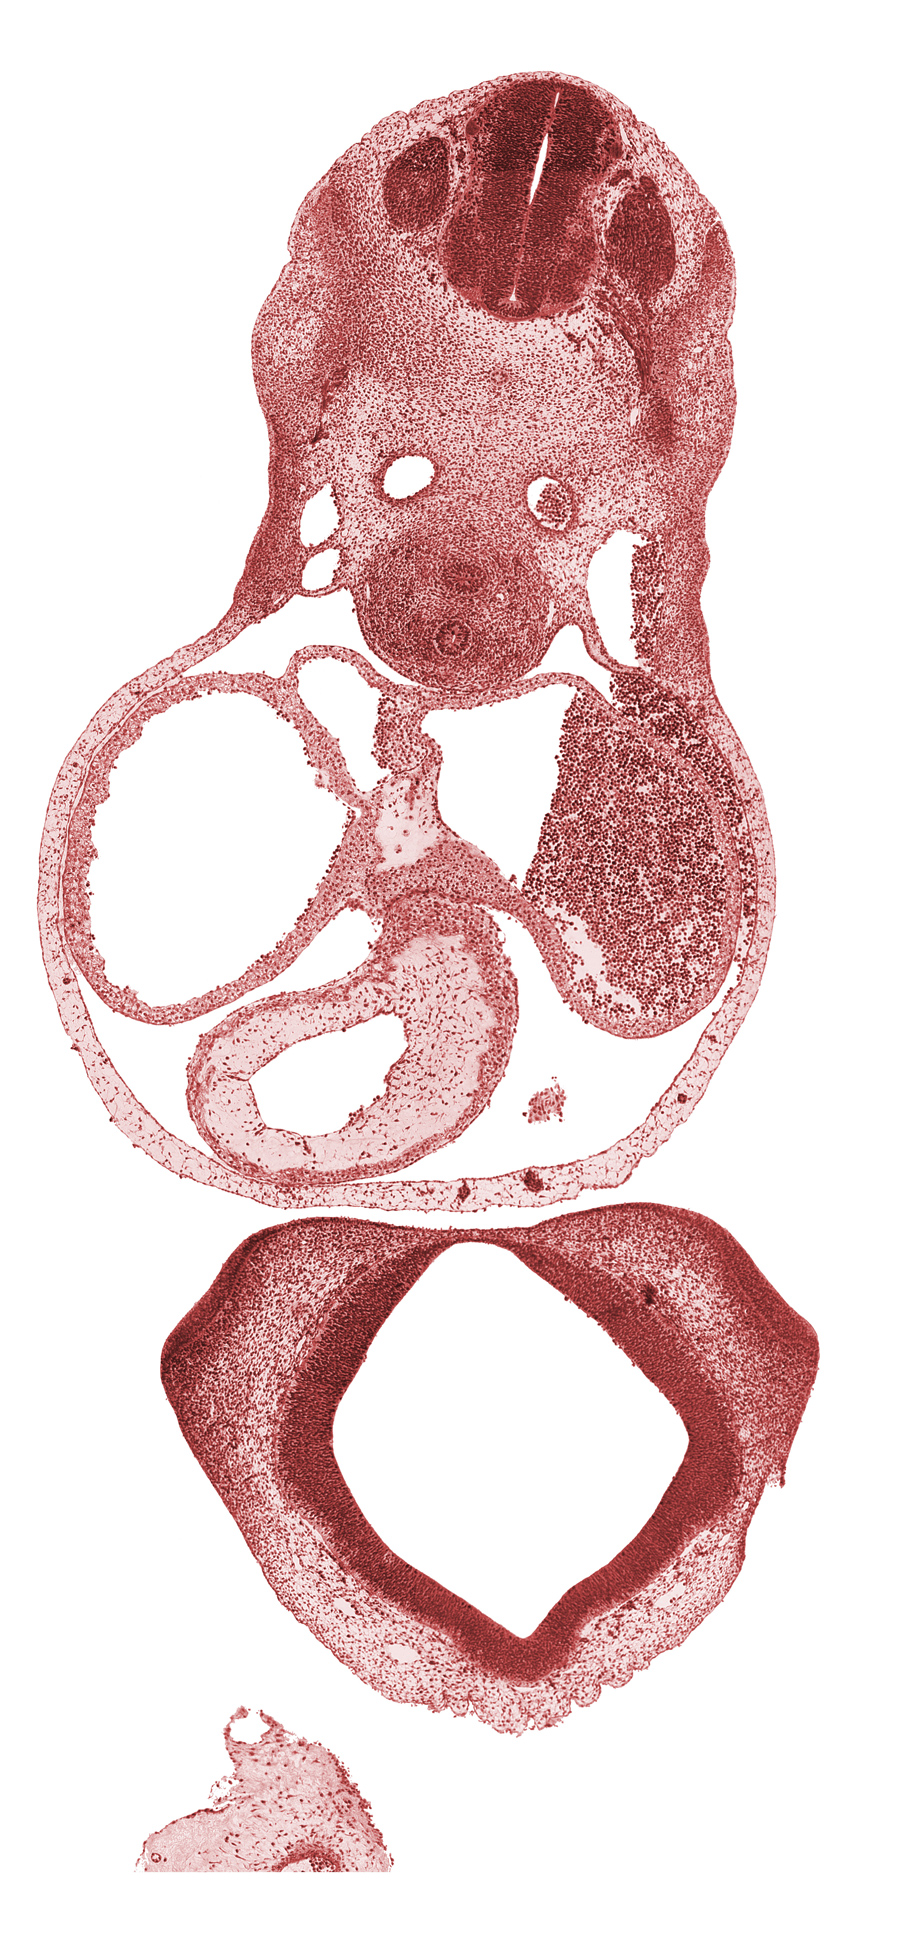 C-4 spinal ganglion, C-4 spinal nerve, C-4 ventral root, cephalic edge of left ventricle, cerebral primordium (vesicle), conus cordis (outflow tract), diencoel (third ventricle), dorsal aorta, left atrium, left venous valve, nasal disc (olfactory placode), notochord, olfactory area, pericardial cavity, pericardial sac, precardinal vein, primary interatrial septum (septum primum), right atrium, sinus venosus, truncus arteriosus (outflow tract)